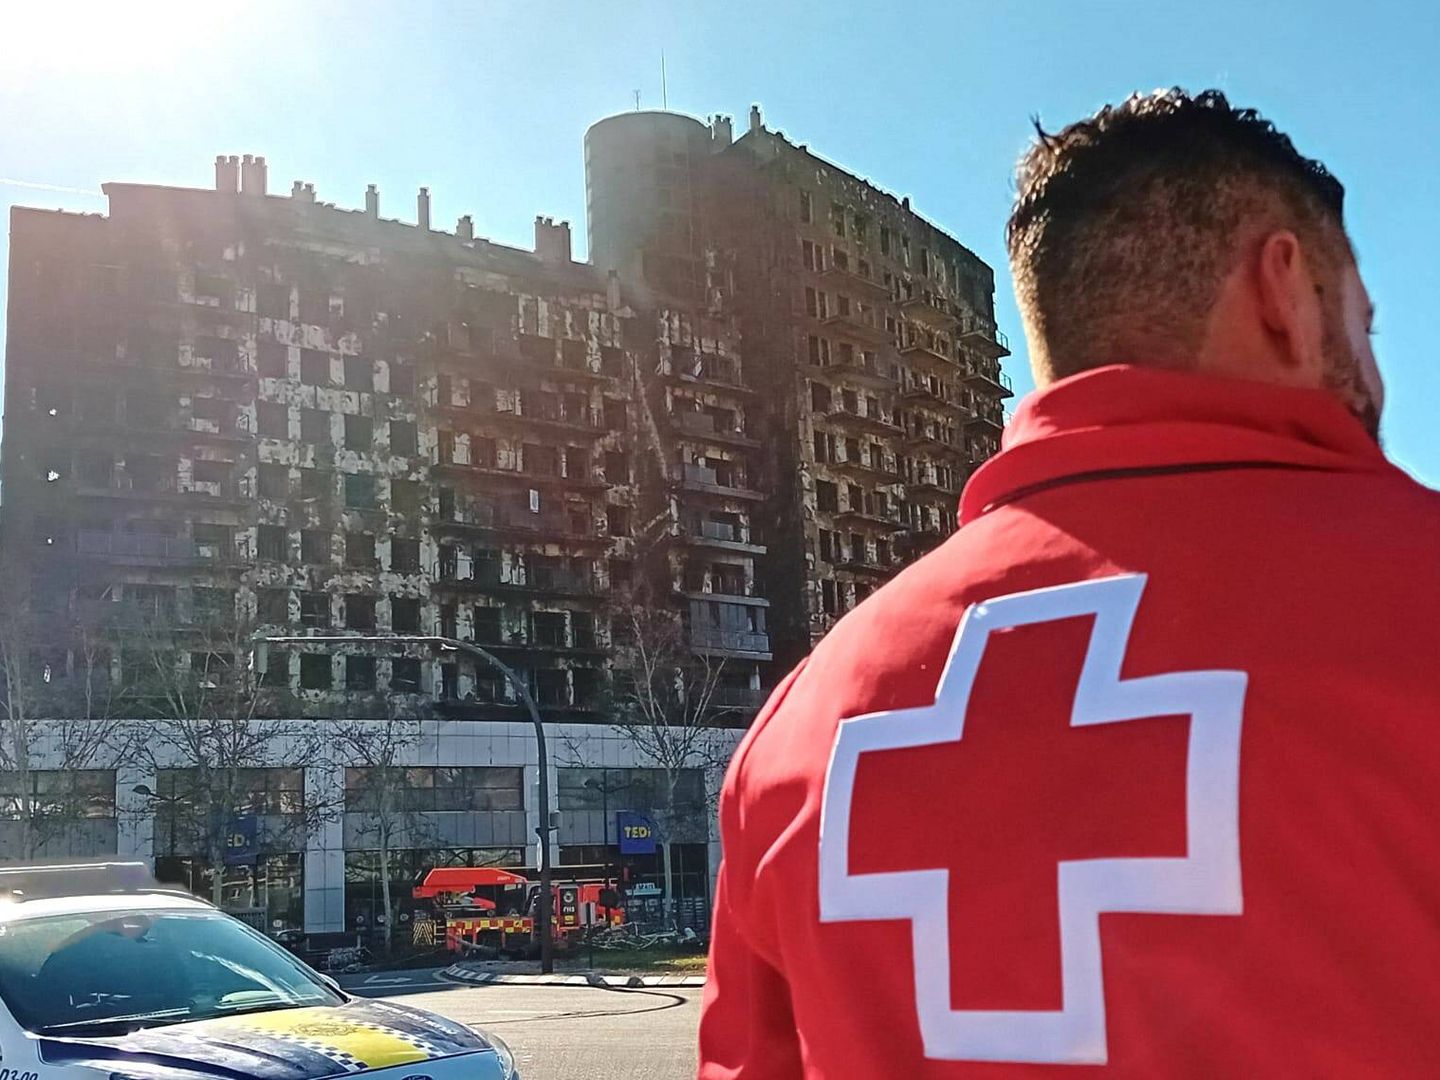 Mario Saiz forma parte del equipo de emergencias sociosanitarias que atiene desde anoche a los afectados por el incendio. En la imagen, aparece junto al edificio calcinado. (Cedida)